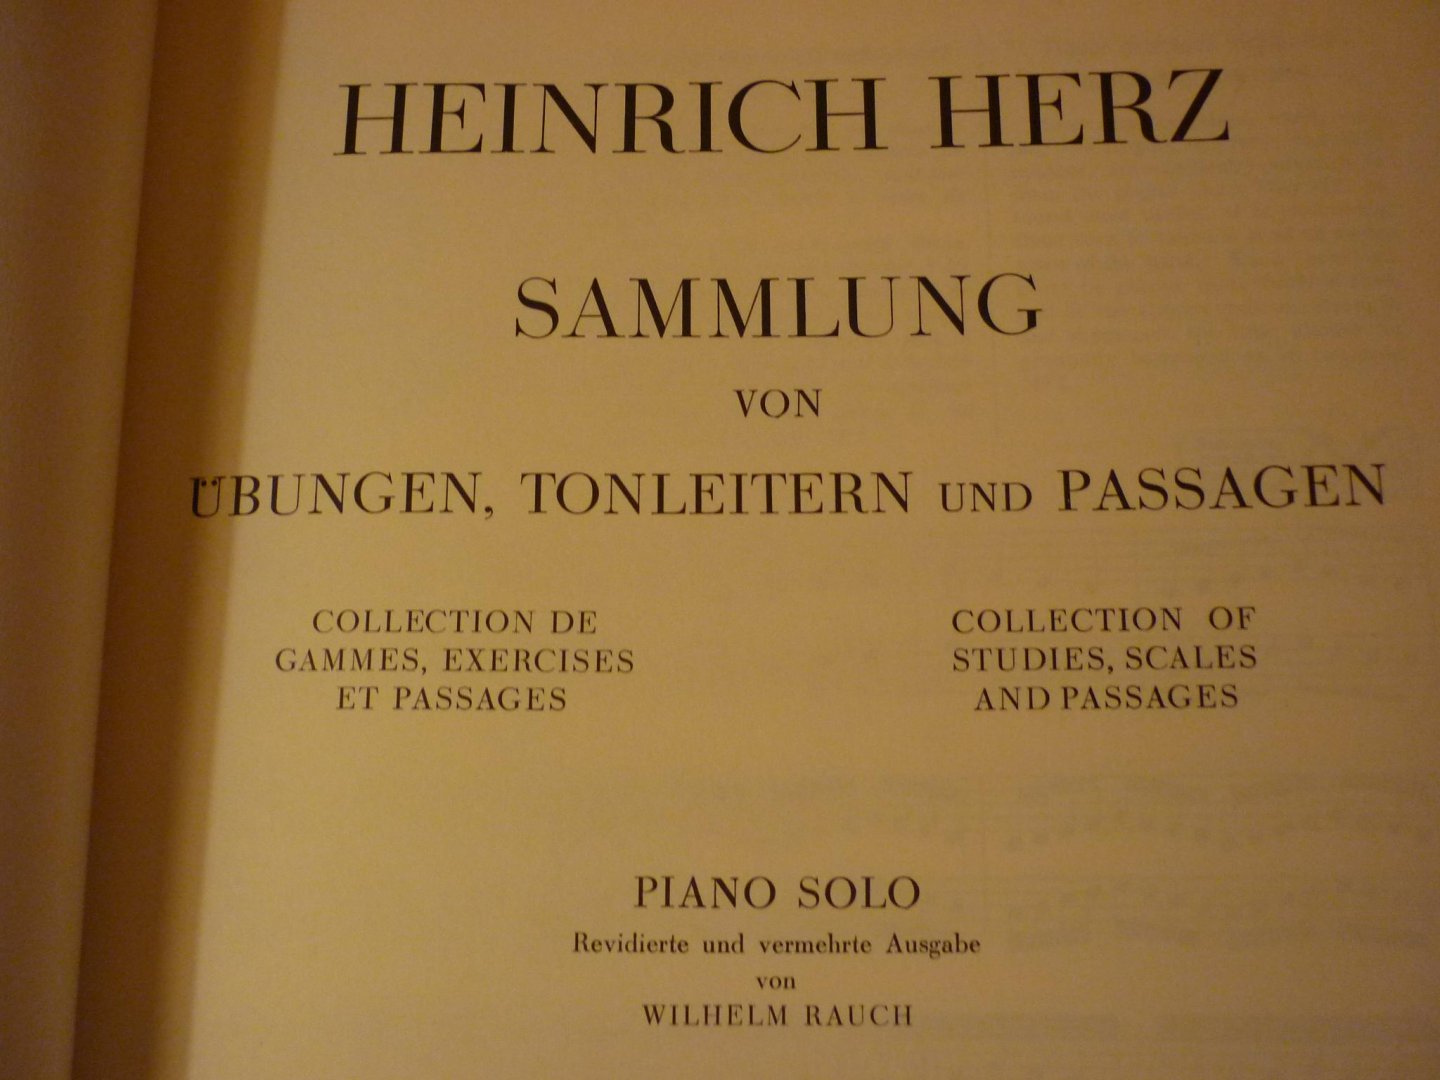 Herz; Heinrich - Gammes; Sammlung von Ubungen, Tonleitern und Passagen